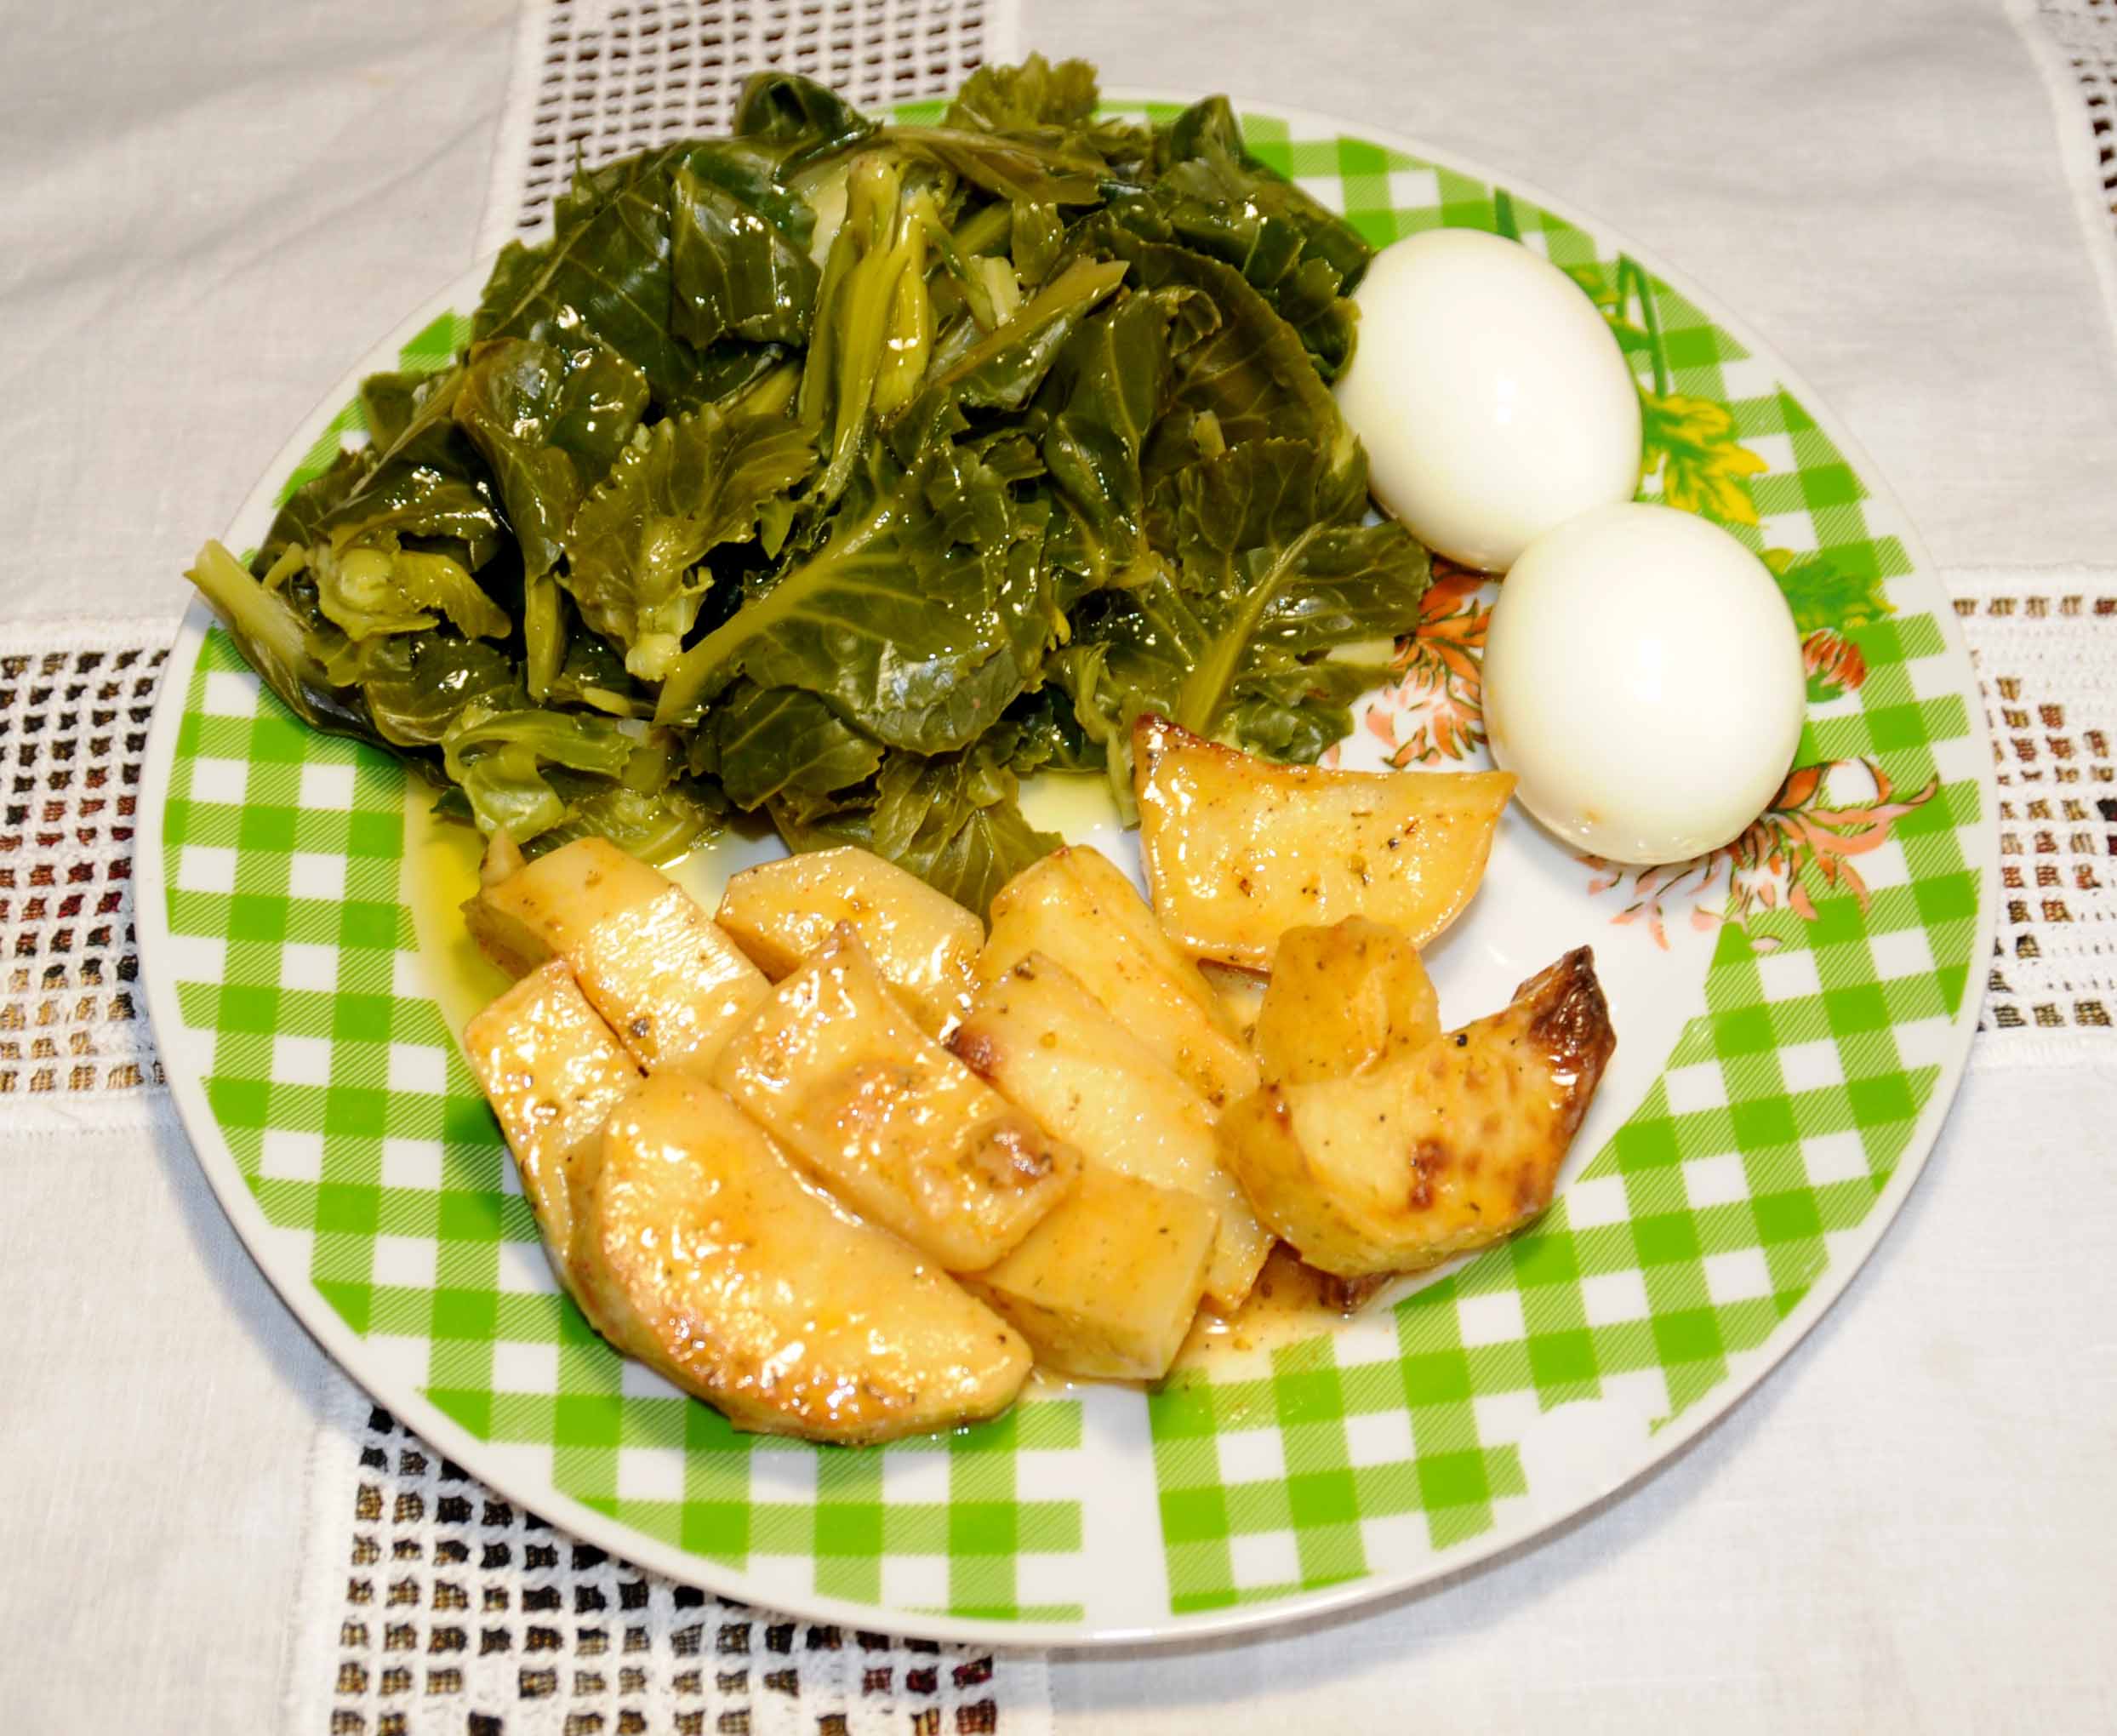 Πατάτες φούρνου με δυο αυγά και λαχανικά - Baked potatoes with two eggs and vegetables